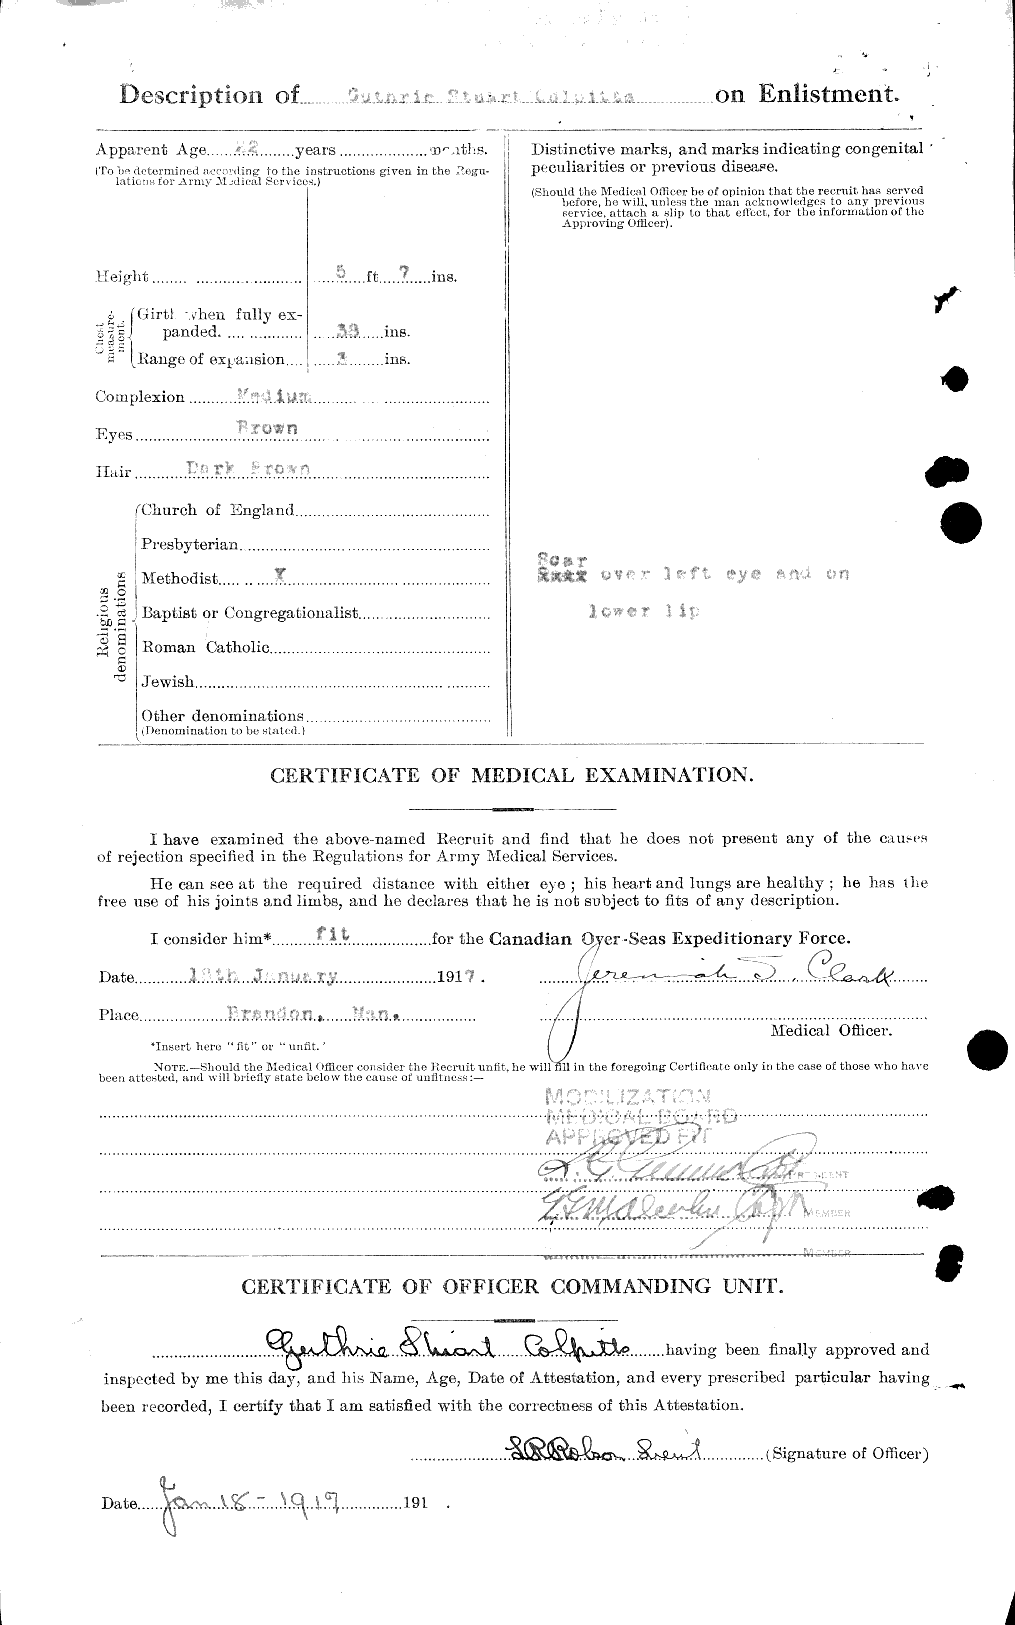 Dossiers du Personnel de la Première Guerre mondiale - CEC 040815b